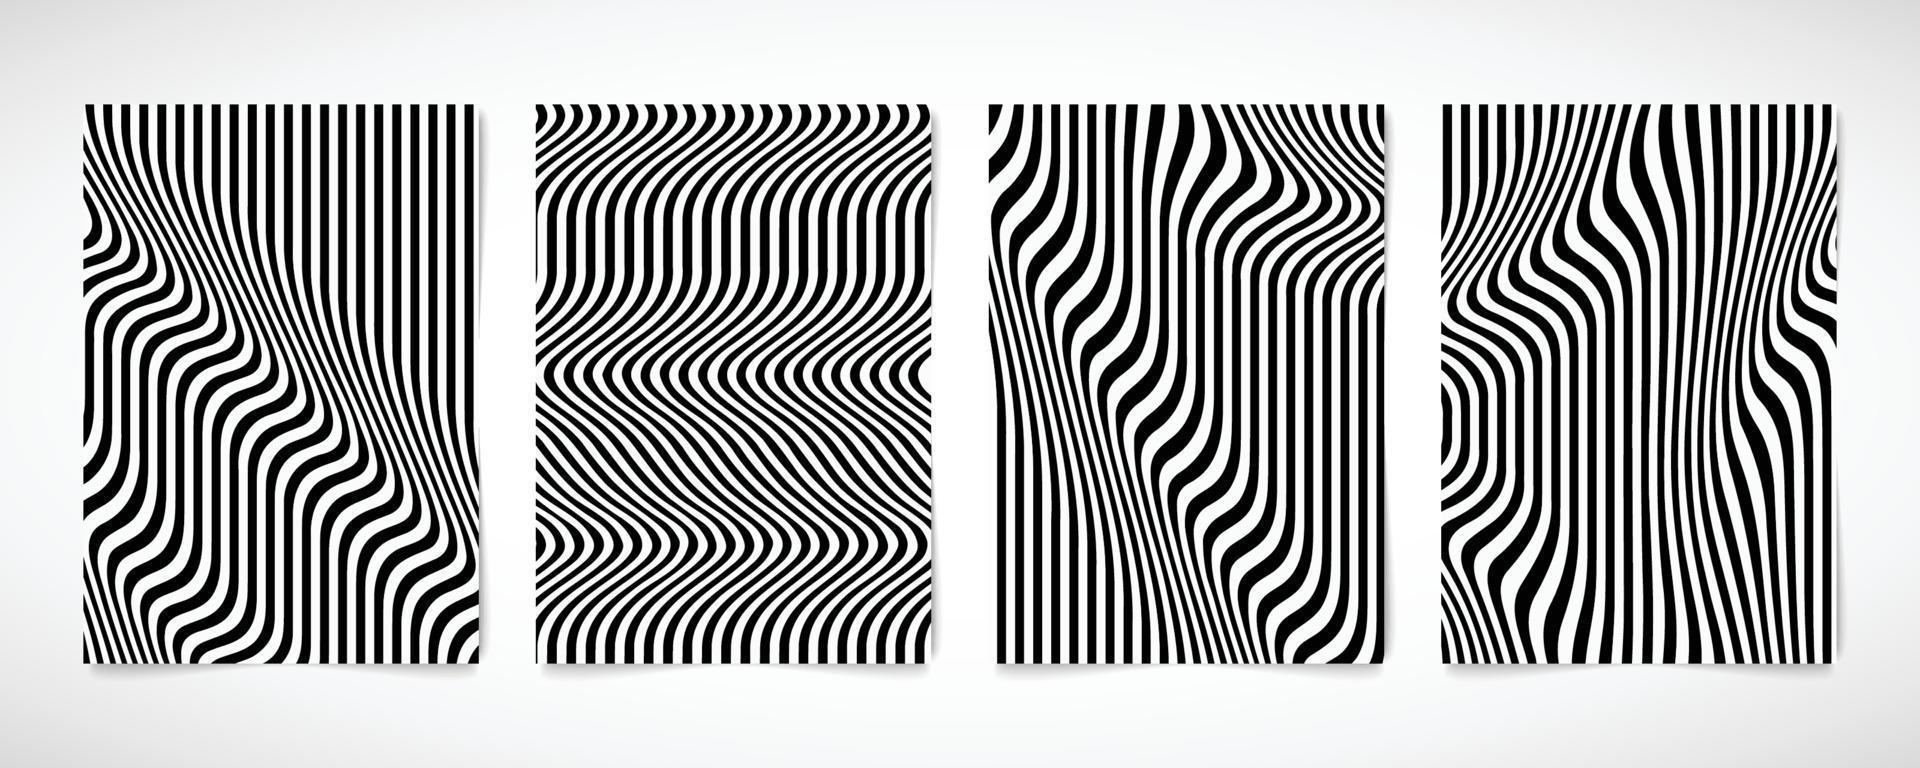 abstrakte Schwarz-Weiß-Wellenmuster-Broschüren-Set-Design-Grafik. Illustrationsvektor eps10 vektor